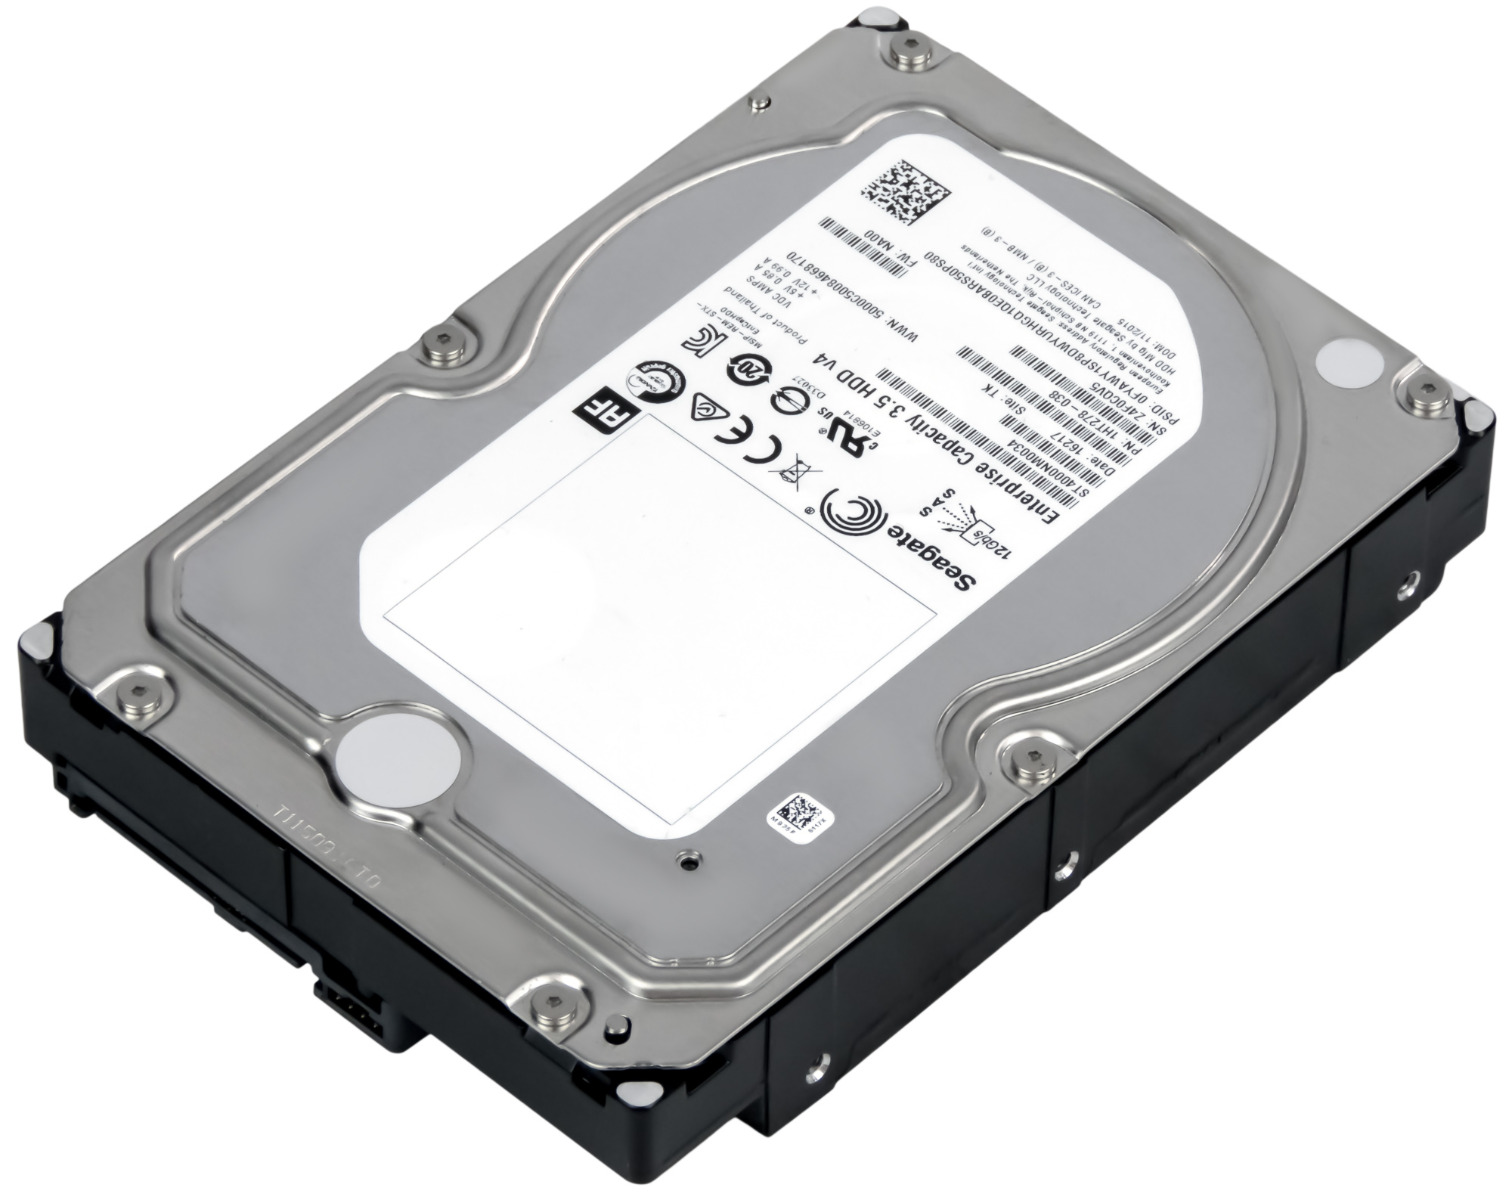 St4000vx016. 4 ТБ внутренний жесткий диск Seagate st4000vx013 (st4000vx013). St4000vx015. St4000ne001.